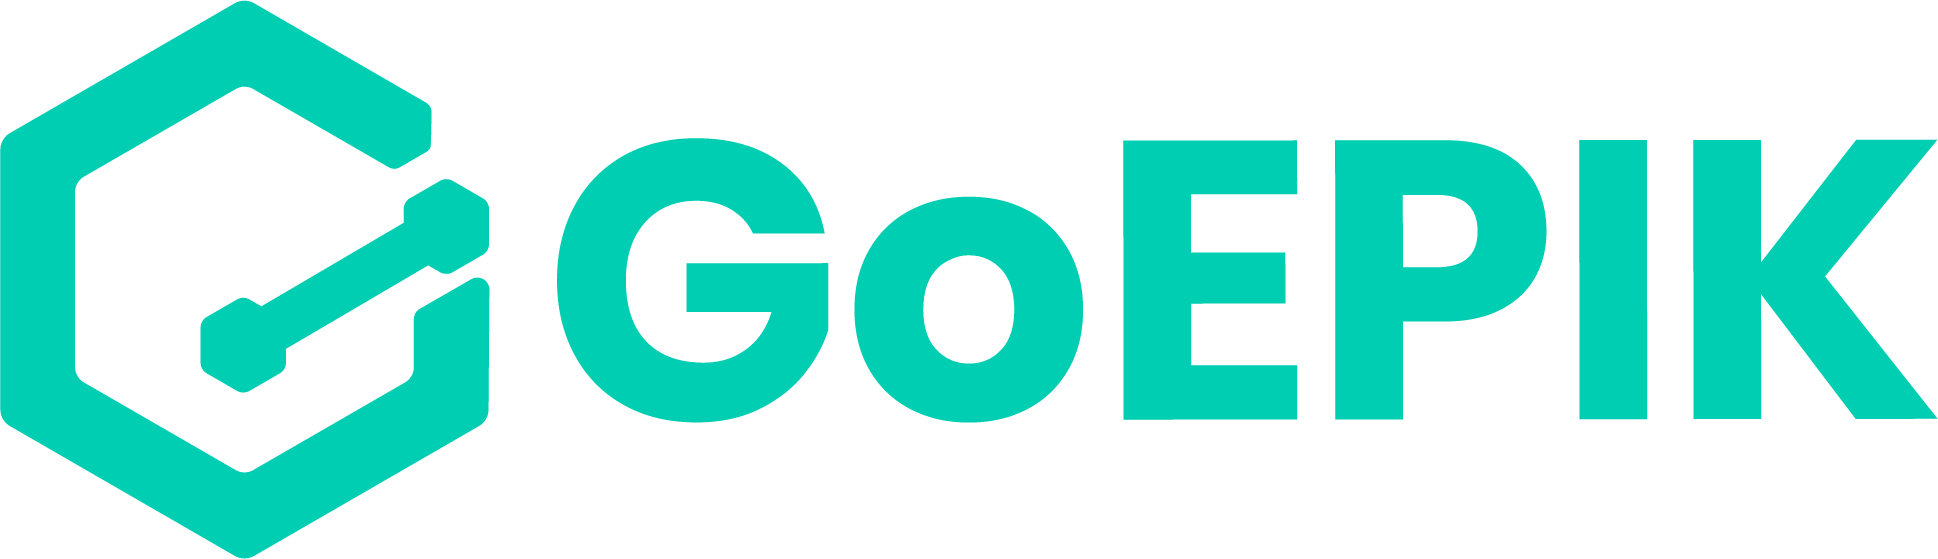 GoEPIK - Plataforma da Indústria 4.0 e Transformação Digital